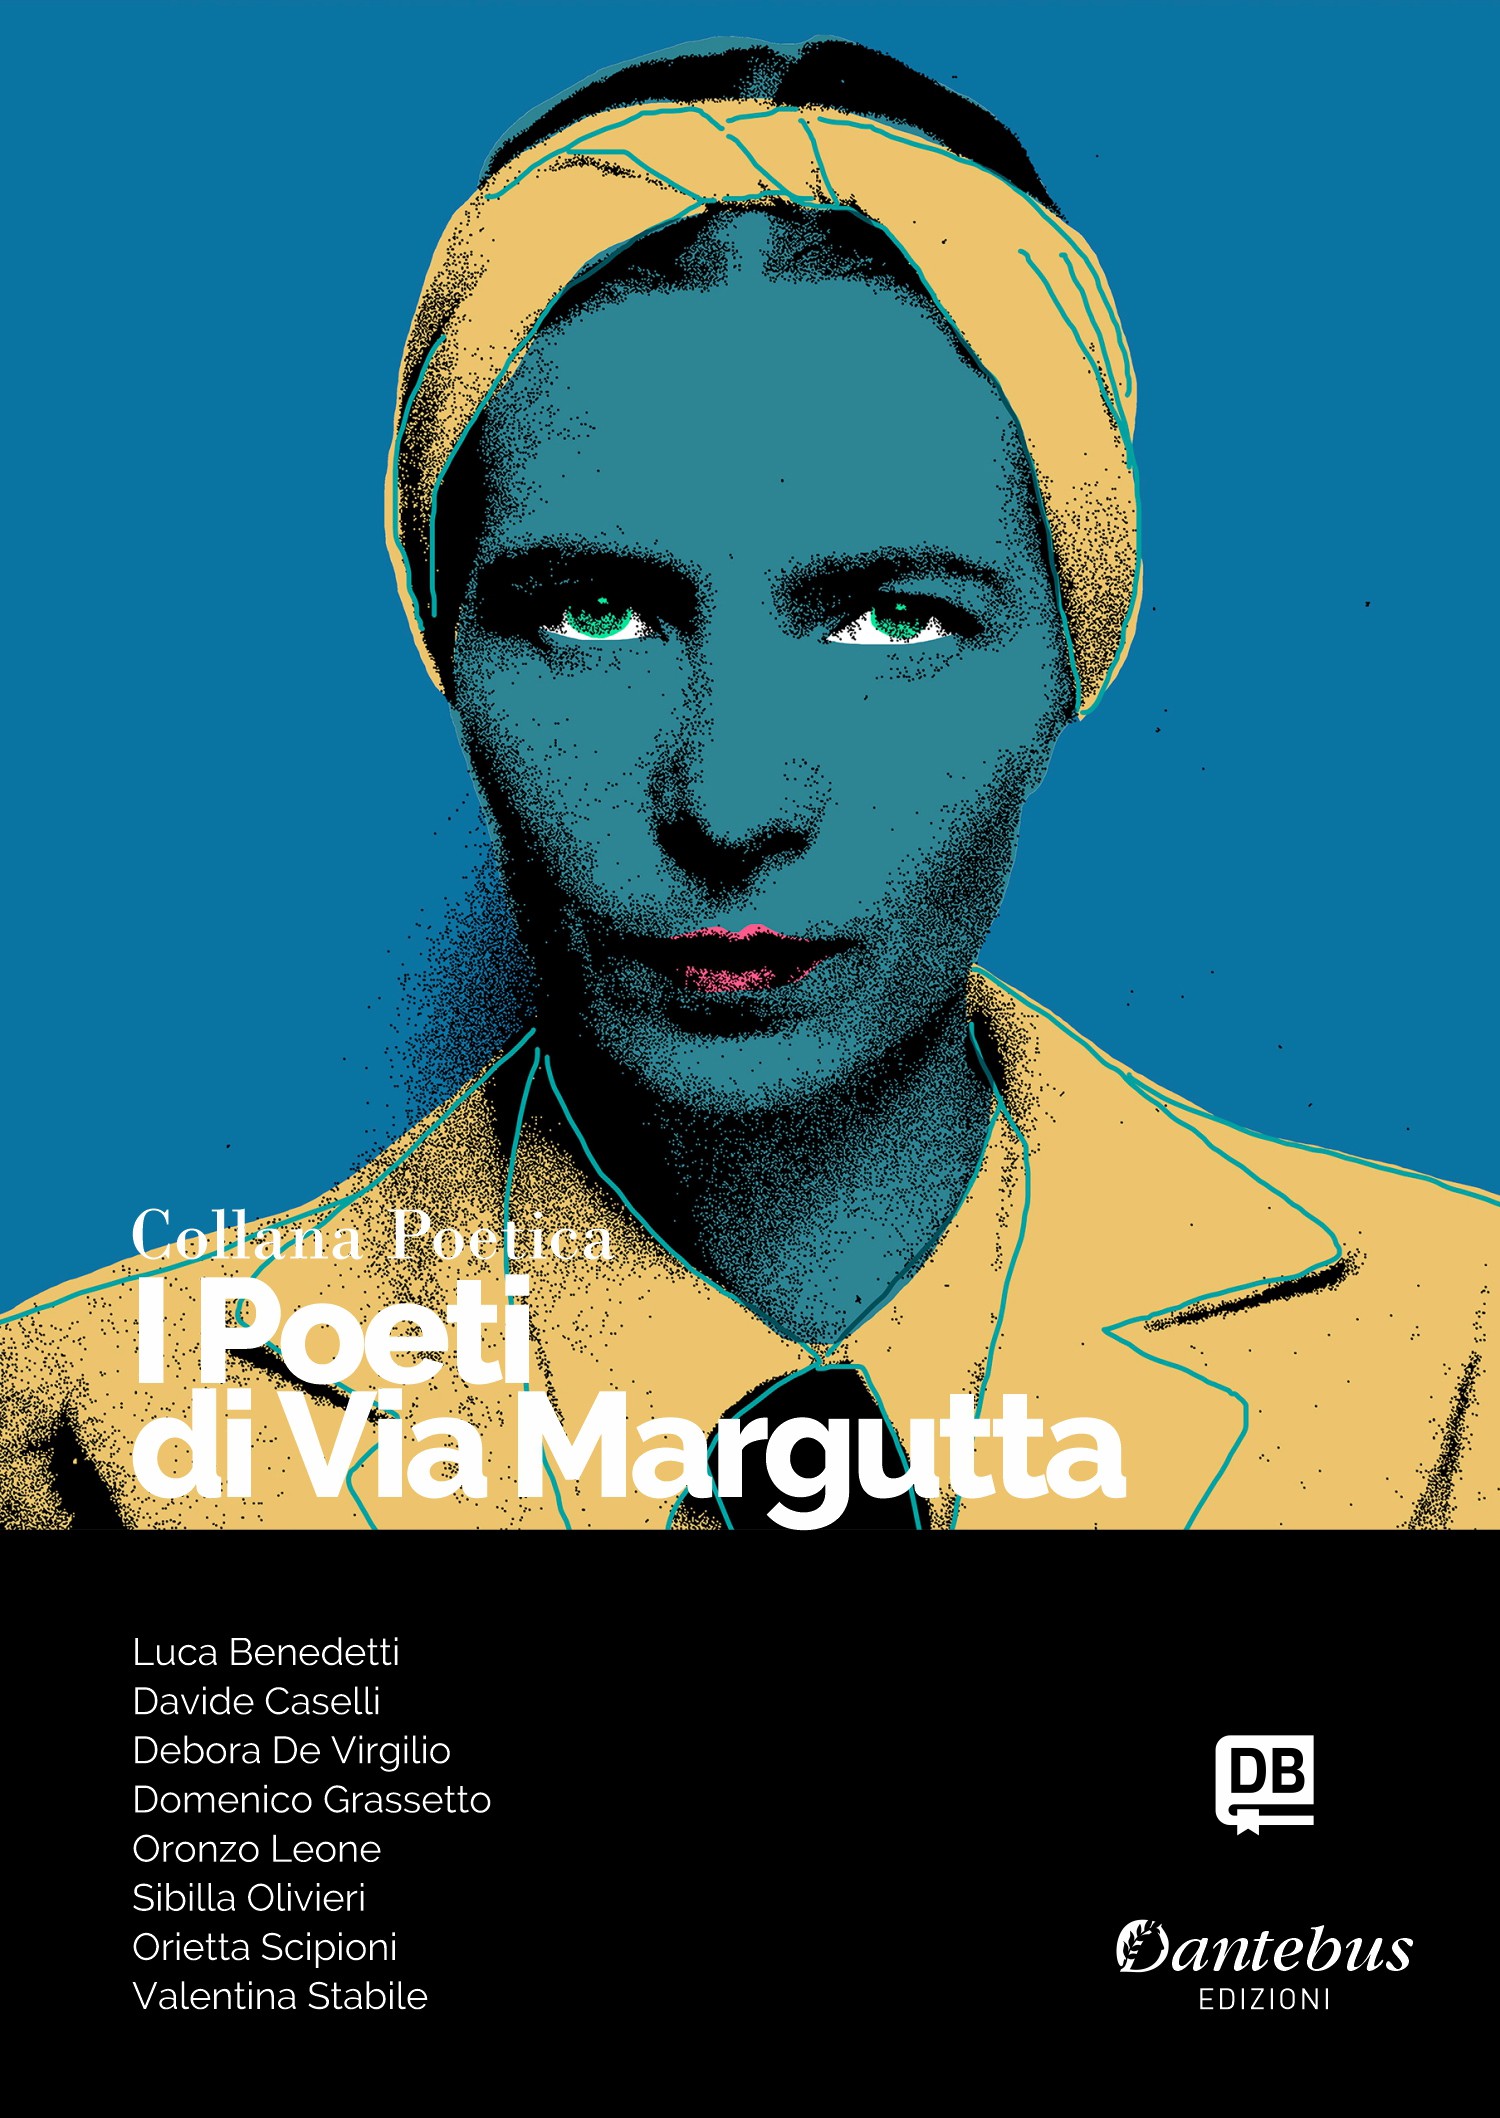 Collana Poetica I Poeti di Via Margutta vol. 92 - Librerie.coop